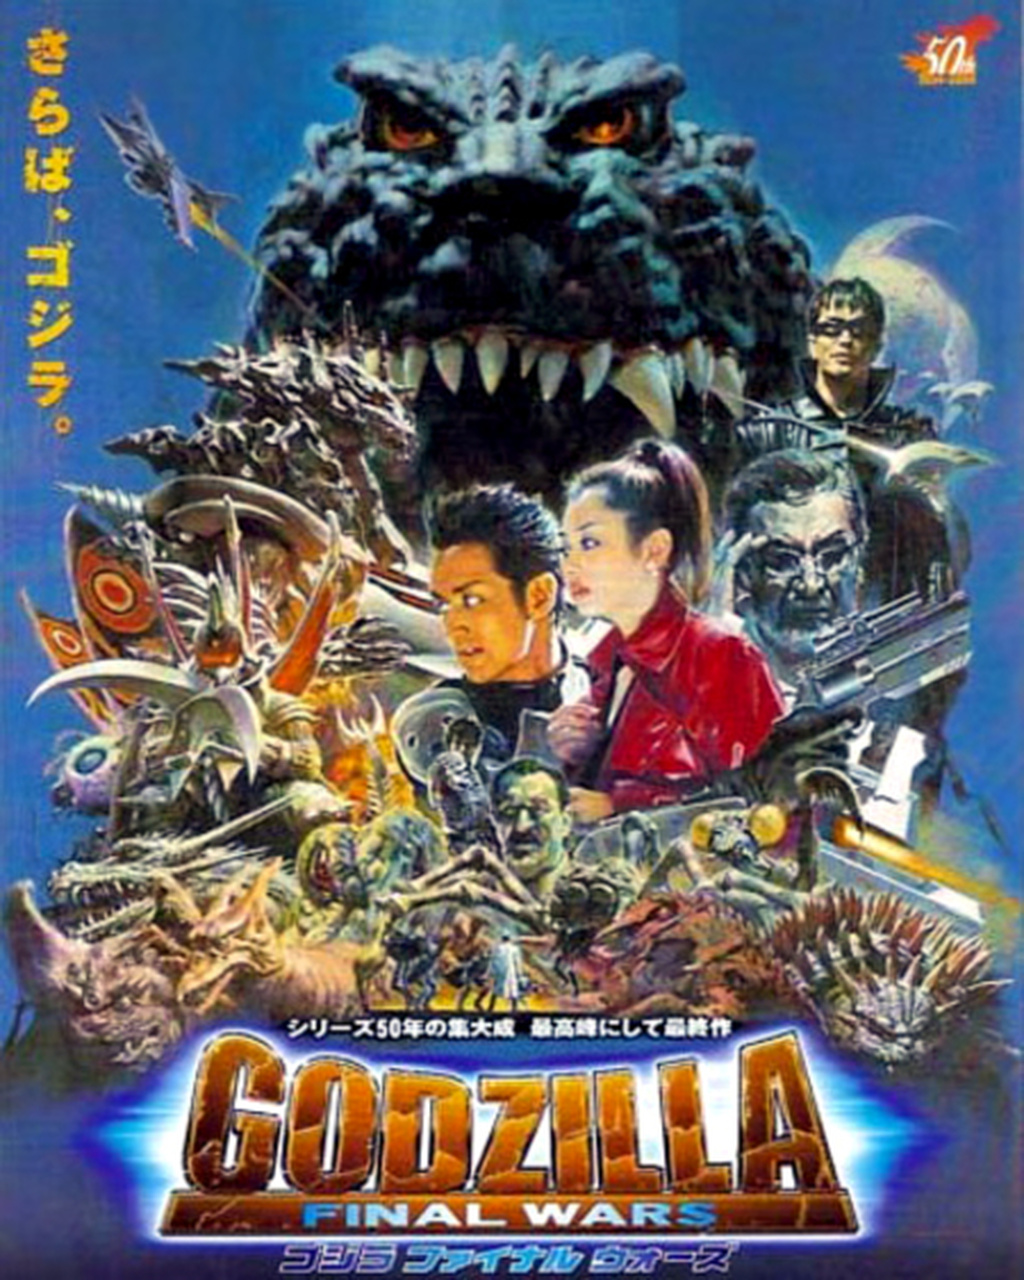 GodzillaFinalWars.jpg